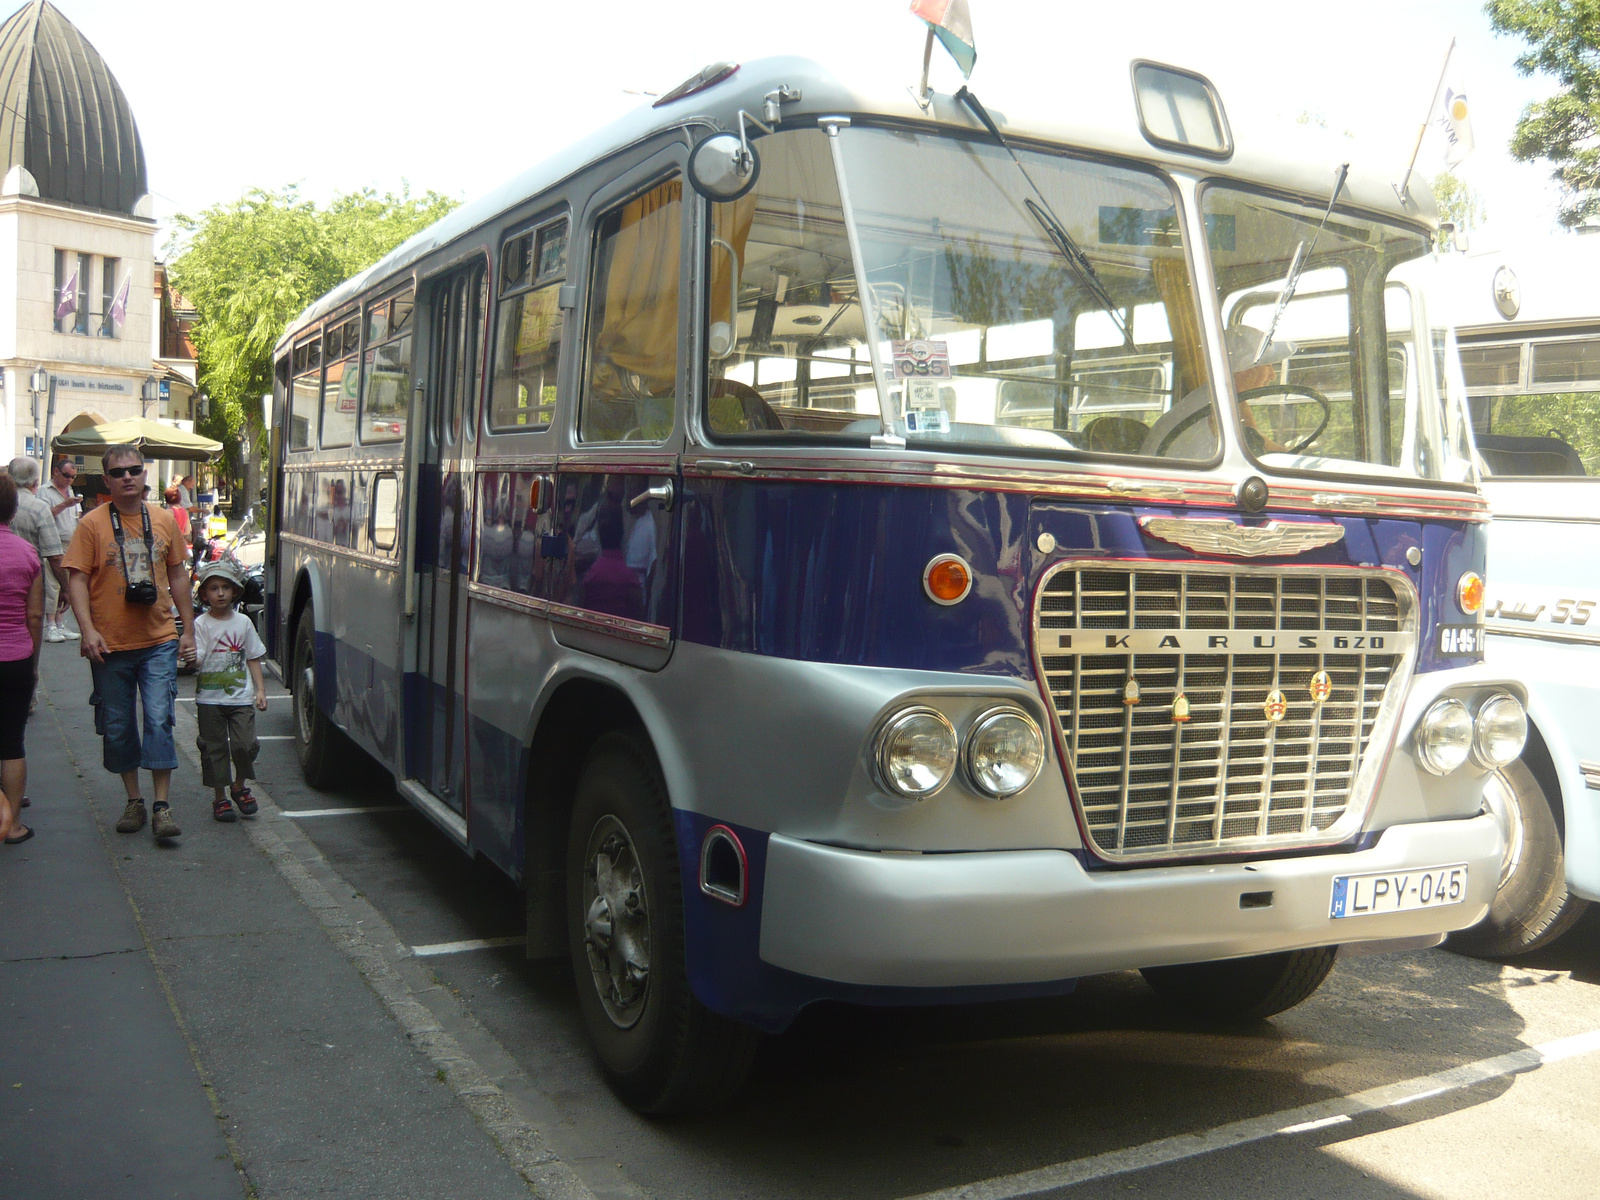 Ikarus 620 (LPY-045)